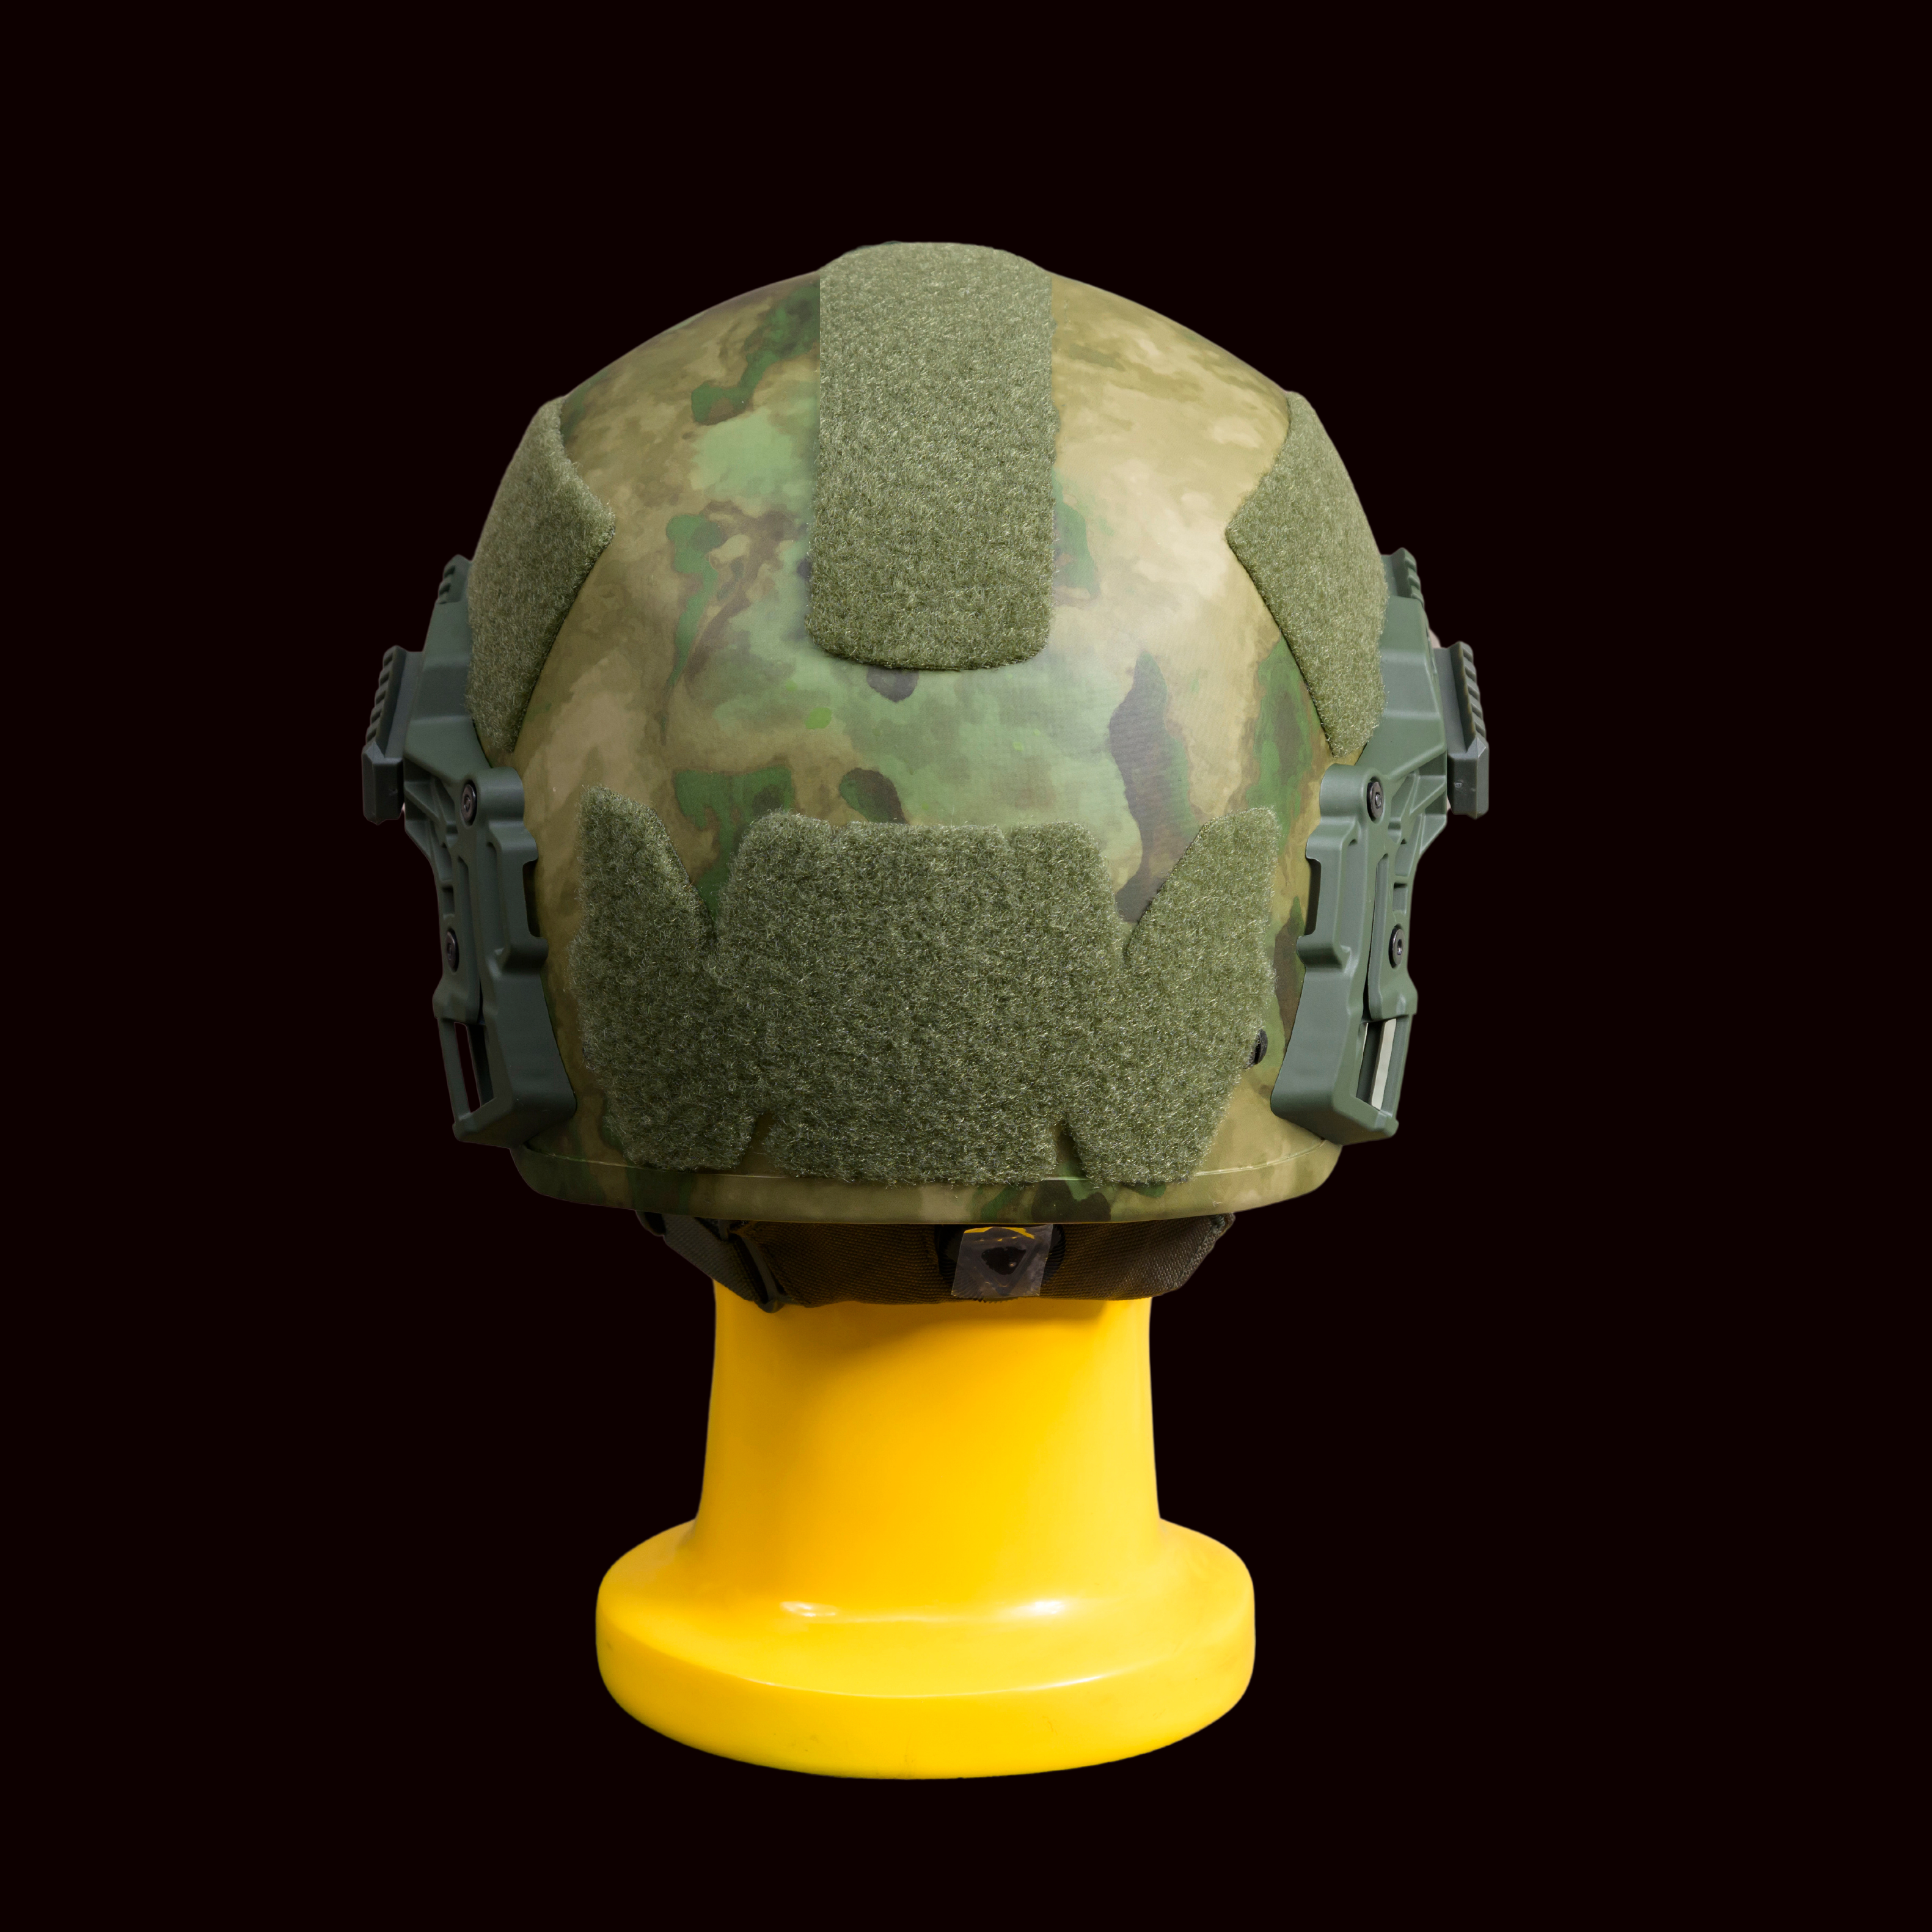 Militech Gen-4 Level IIIA Helmet